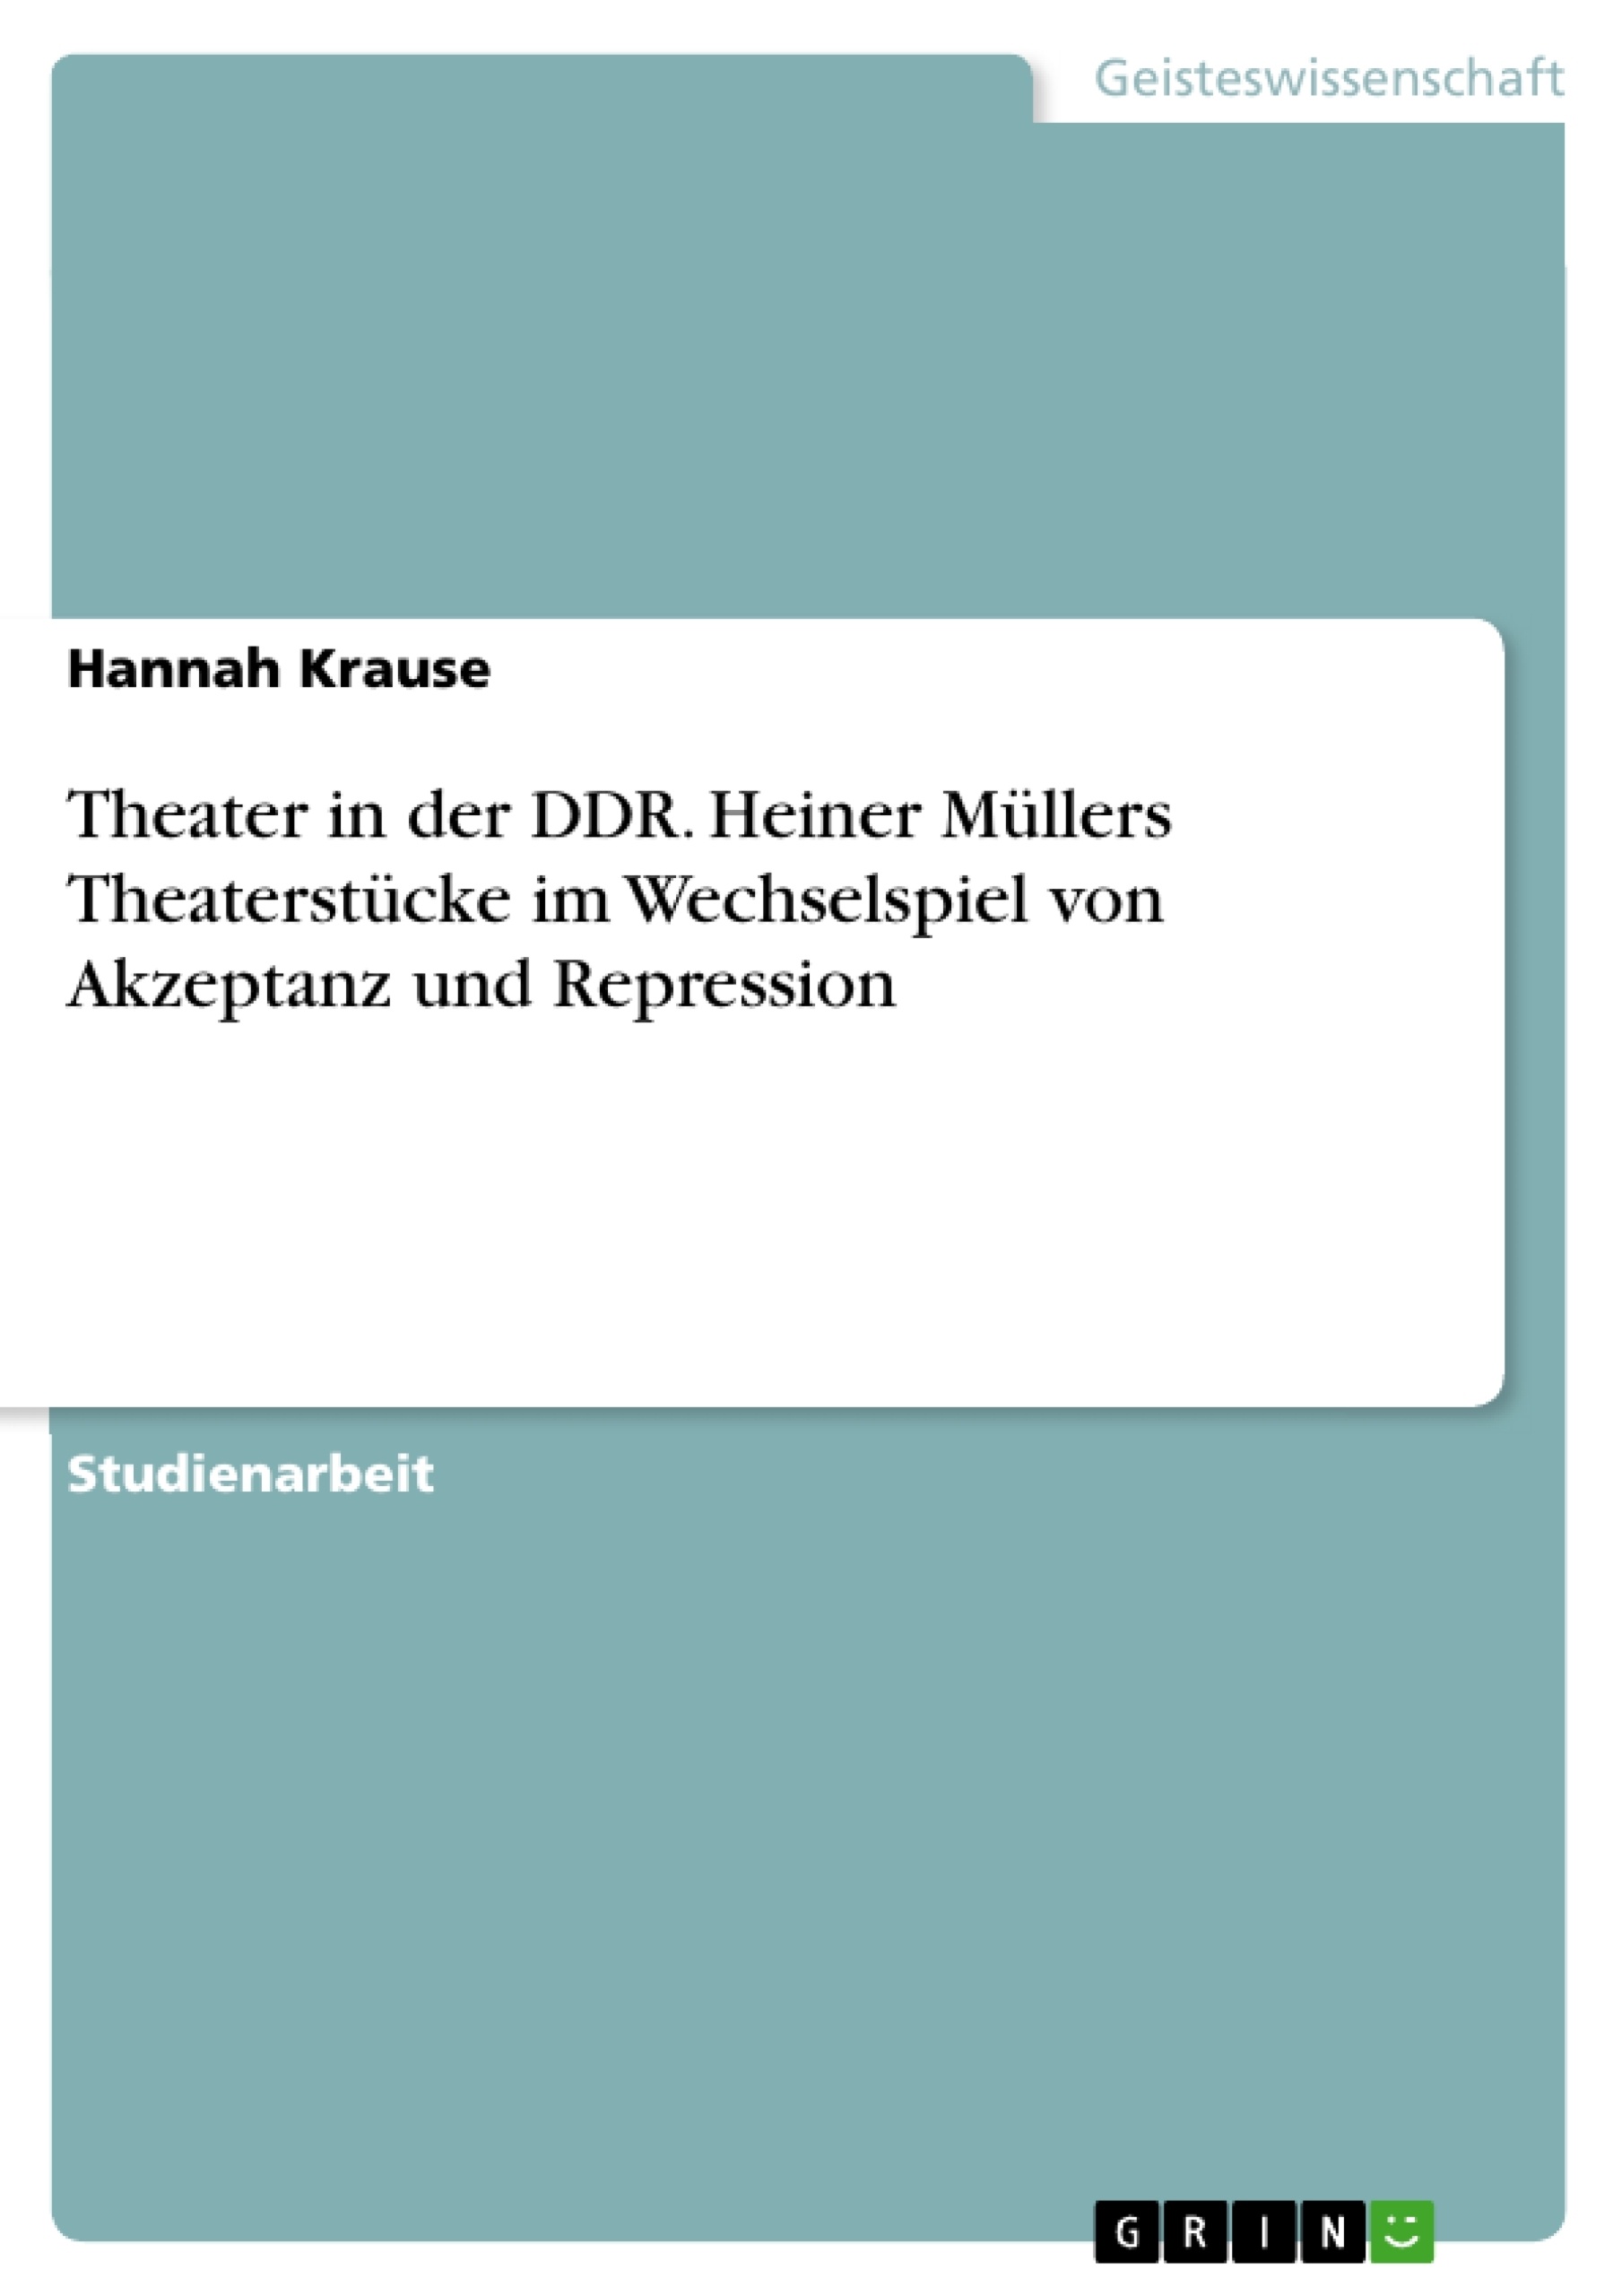 Título: Theater in der DDR. Heiner Müllers Theaterstücke im Wechselspiel von Akzeptanz und Repression